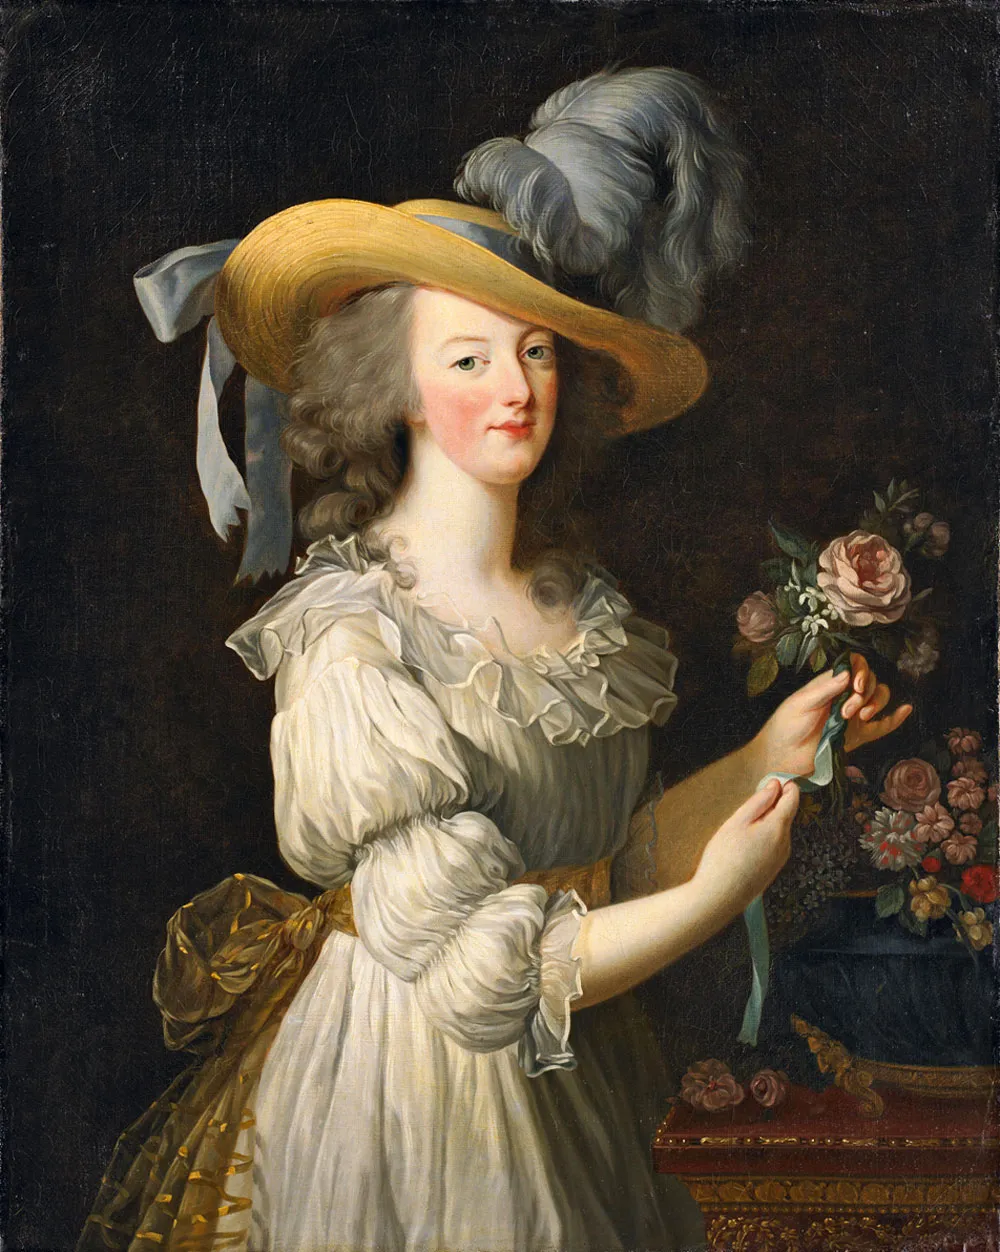 1783 portrait of Marie Antoinette by Louise Élisabeth Vigée Le Brun